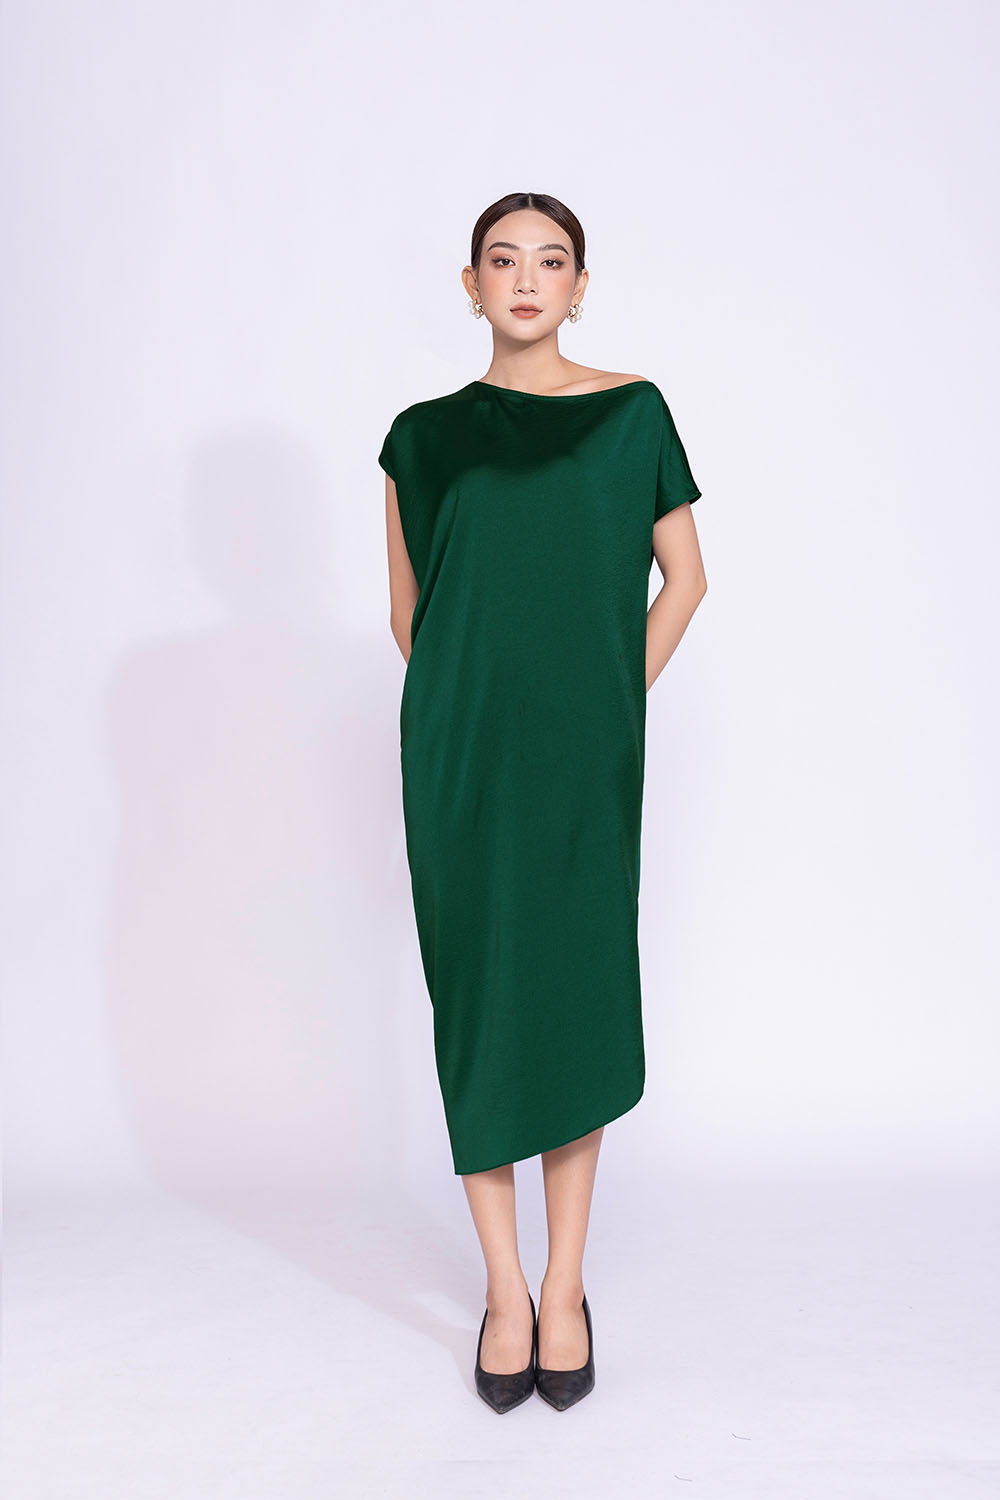 Đầm Suông - Váy Suông - Đầm Bầu Vịt LoveMade Form Rộng Đễn 75kg, Dáng Dài  110cm, Bầu Bí Mặc Xinh | Lazada.vn